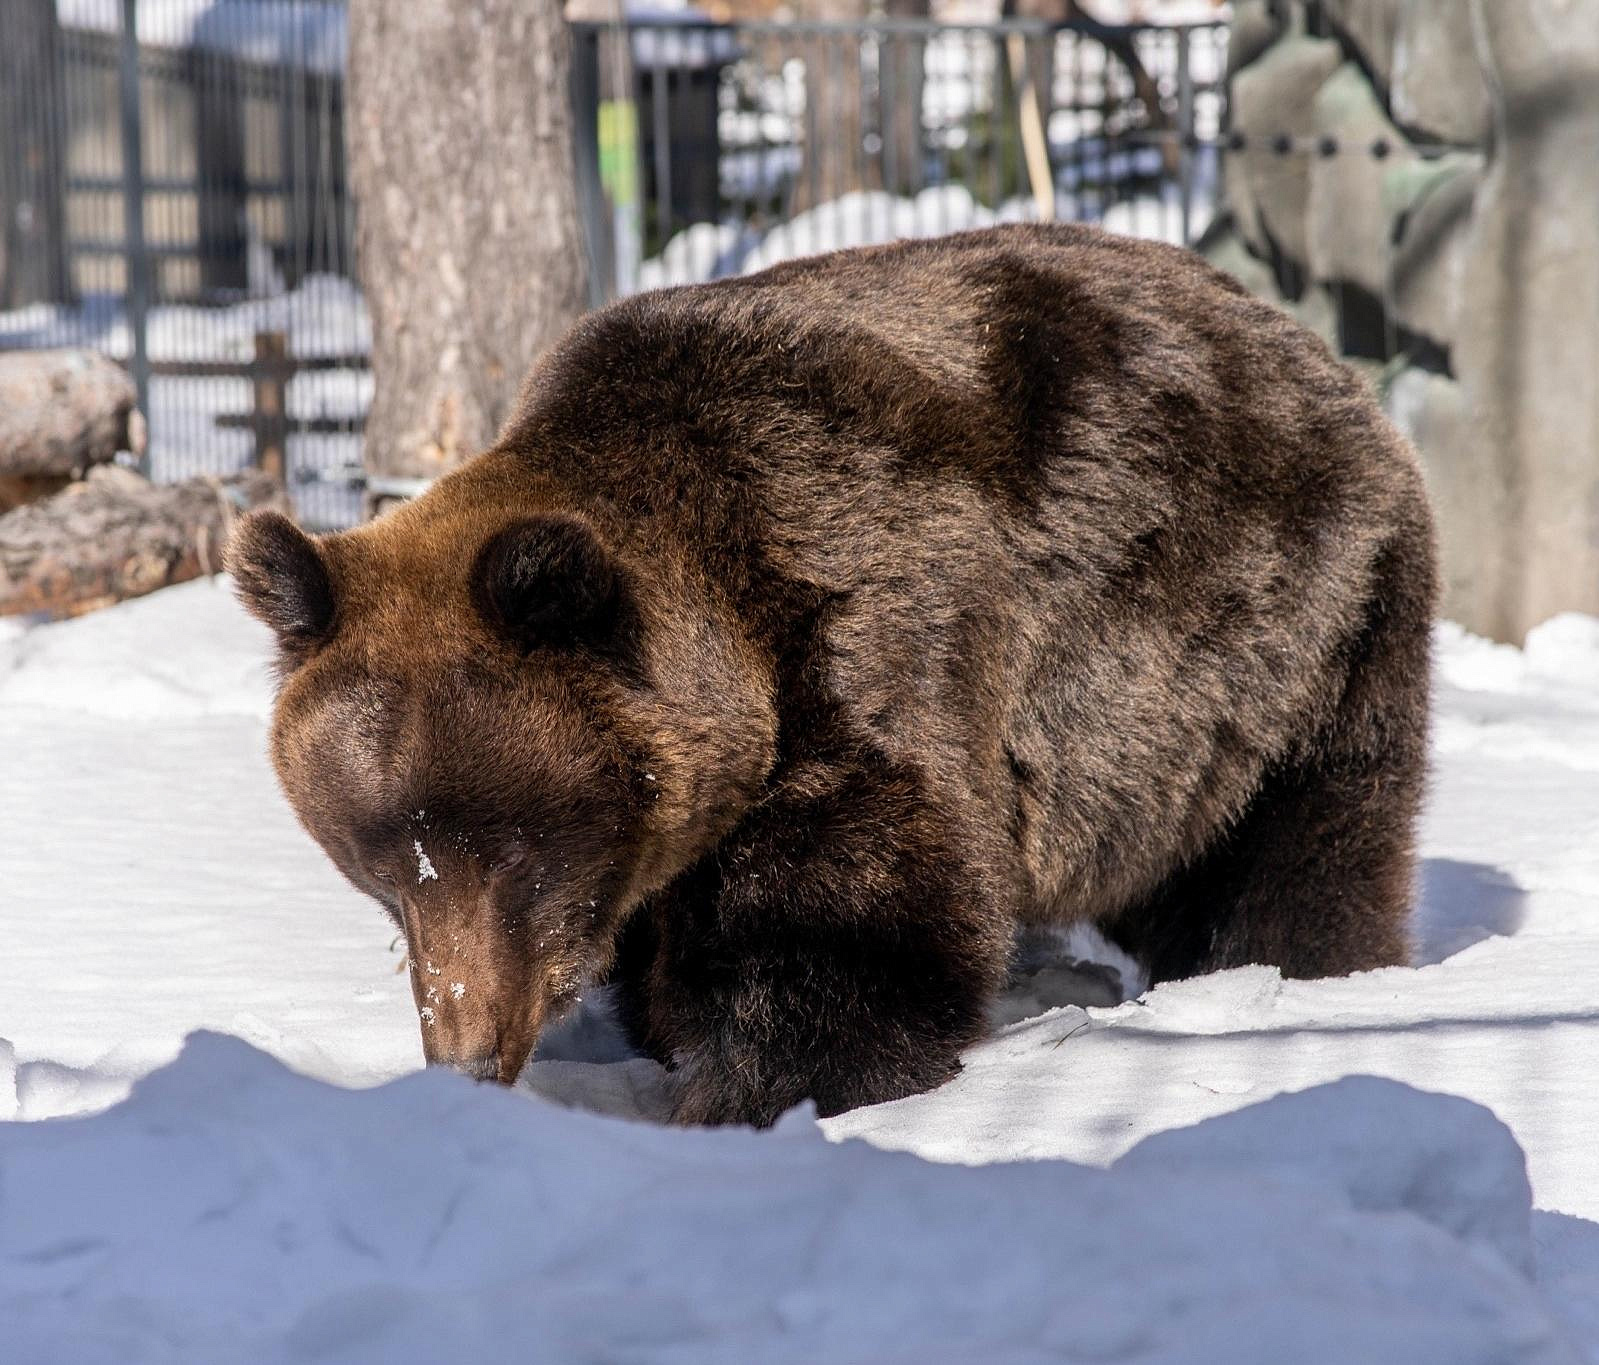 Бурые медведи Лёха и Валя вышли из берлоги после зимней спячки